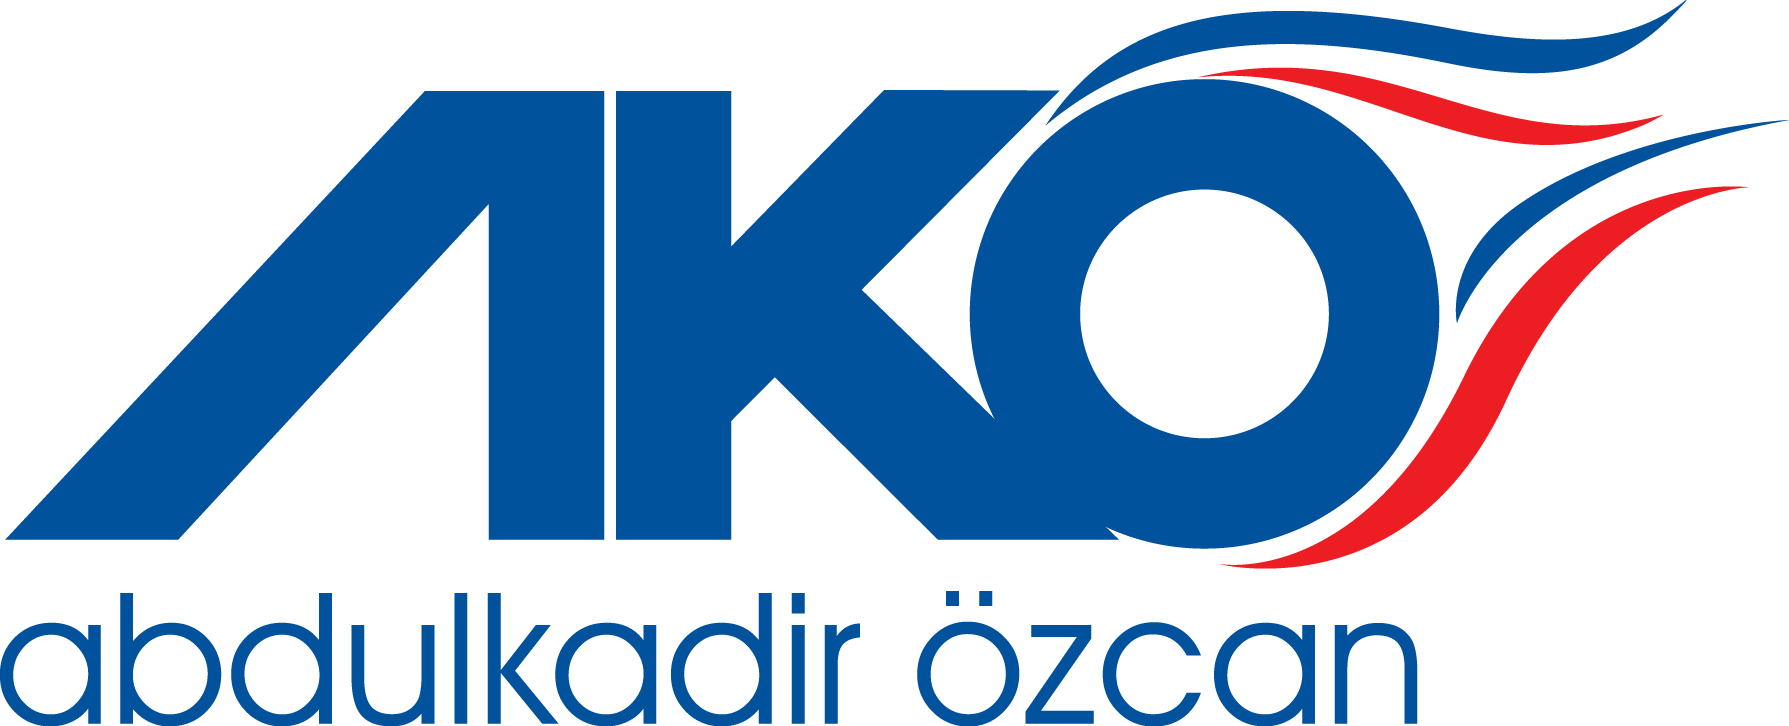 Abdulkadir Özcan Logo [AKO]